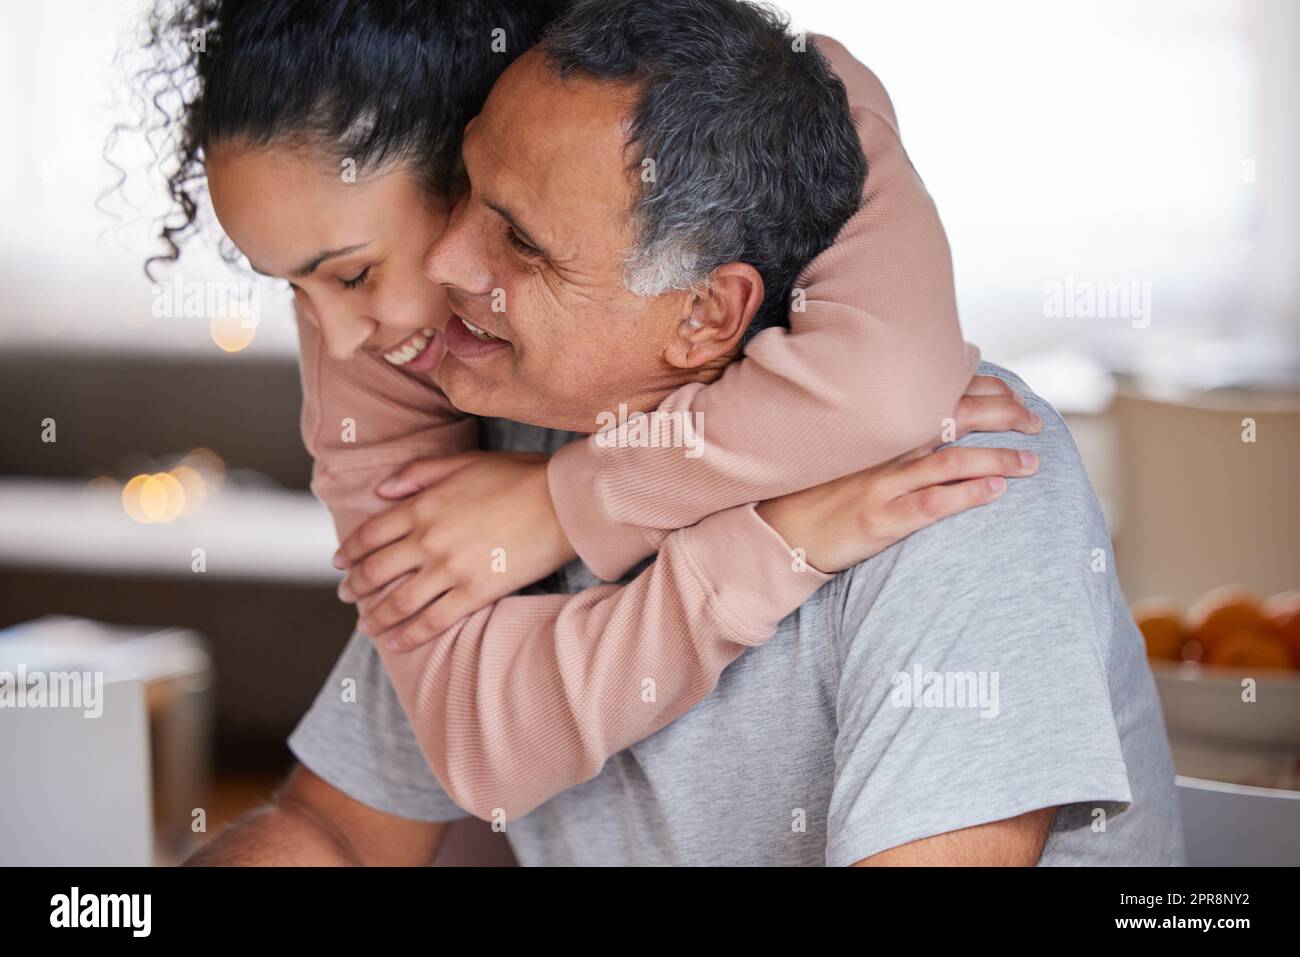 Trascorrere del tempo con voi meraviglioso. Una giovane donna che abbraccia suo padre. Foto Stock